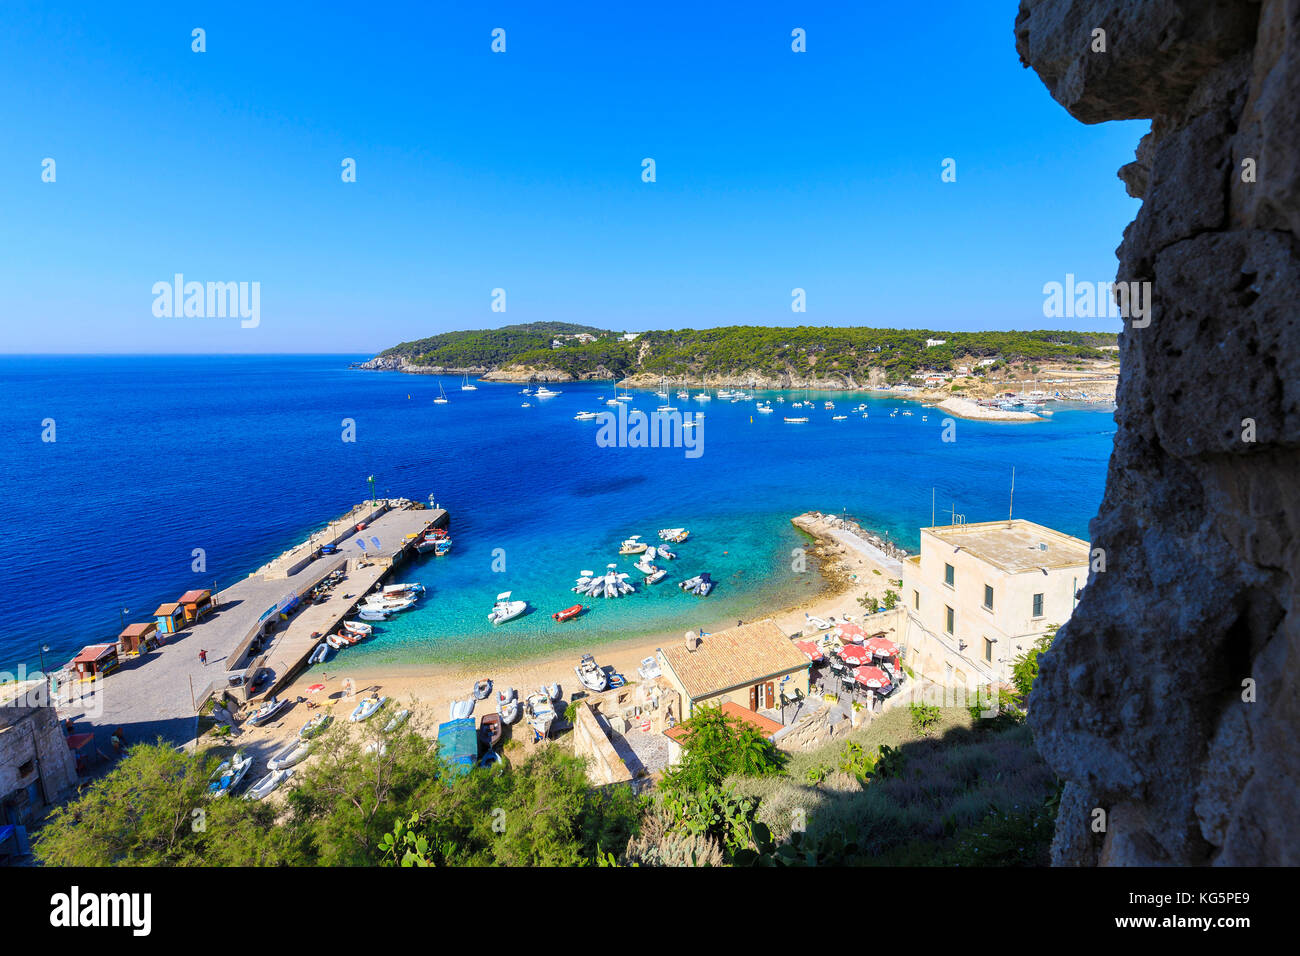 Porto di San Nicola e dell'isola di san domino isola dalla Abbazia di santa maria, isole Tremiti, puglia, Italia. Foto Stock